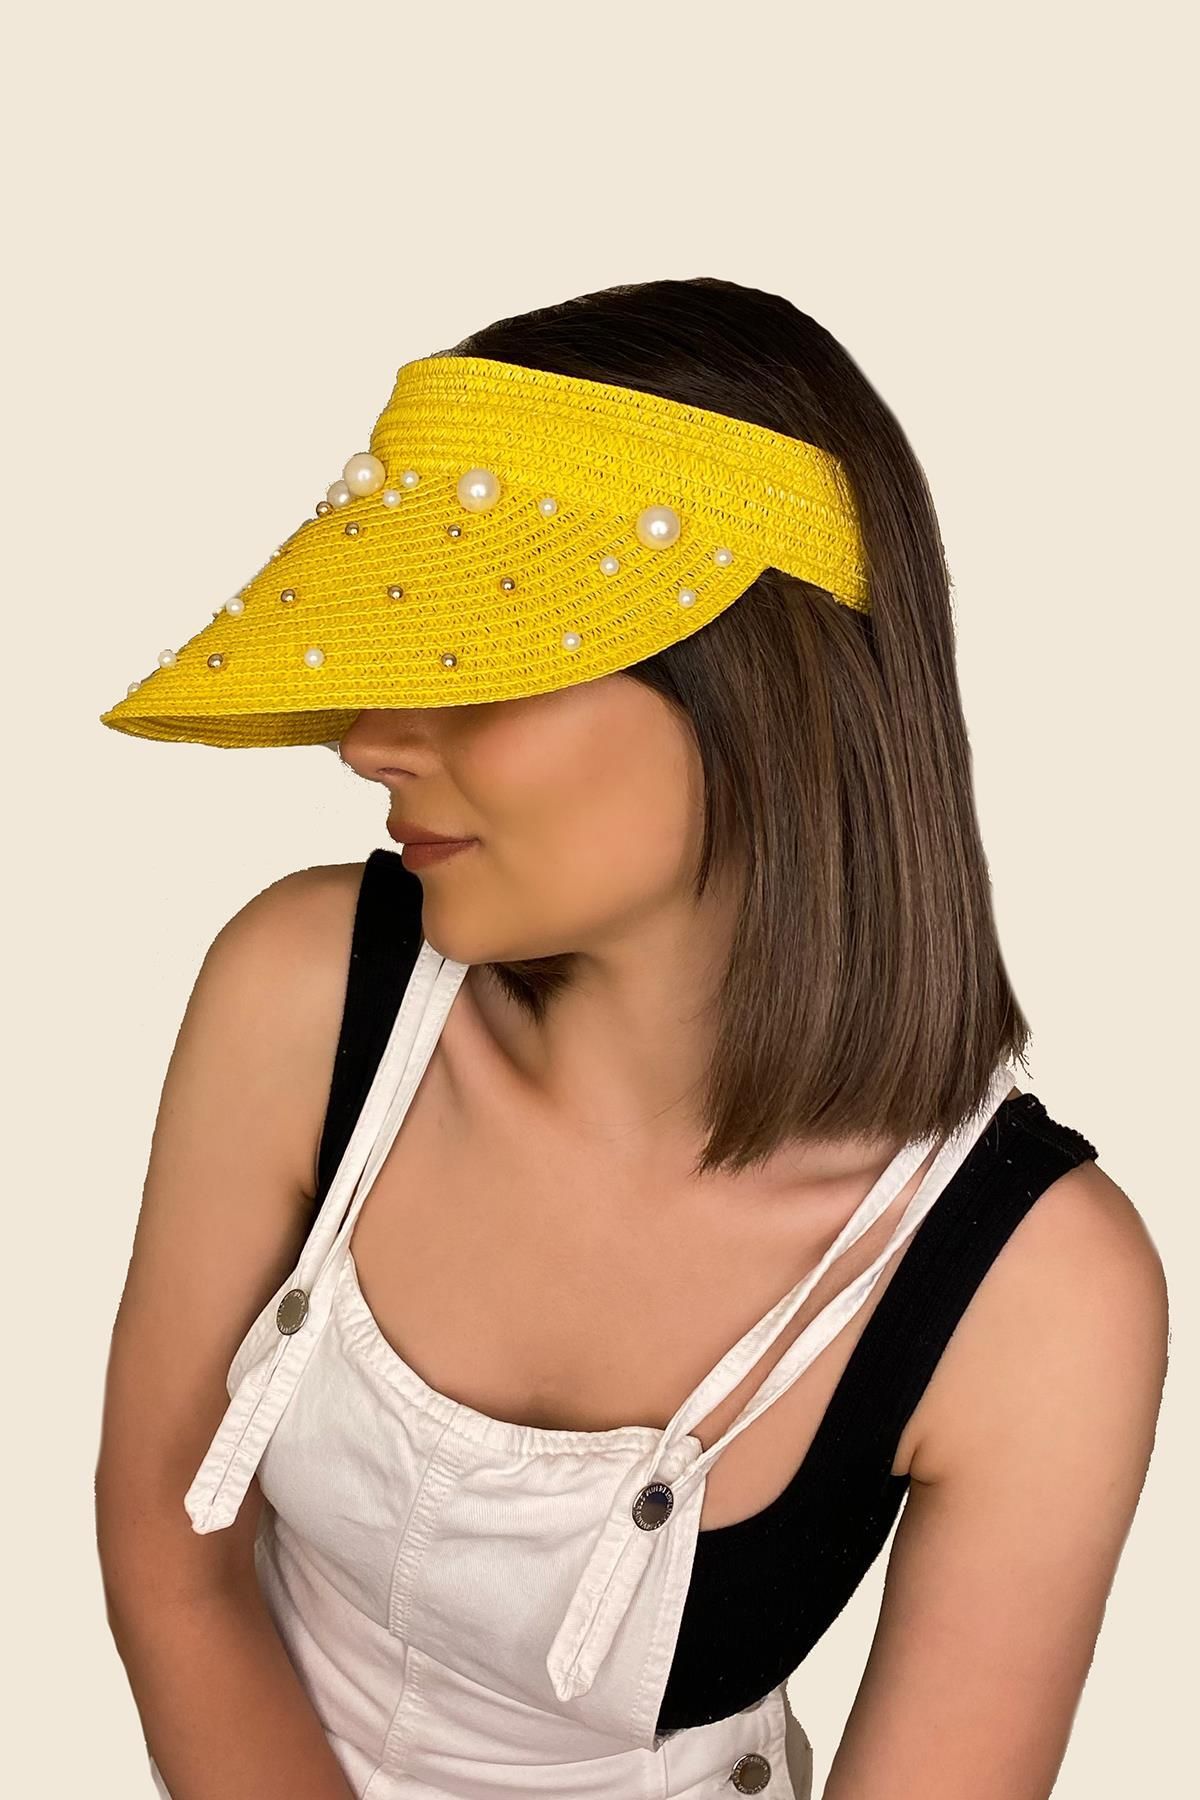 Axesoire 14260-4 Üzeri Incili Sarı Hasır Vizör Şapka